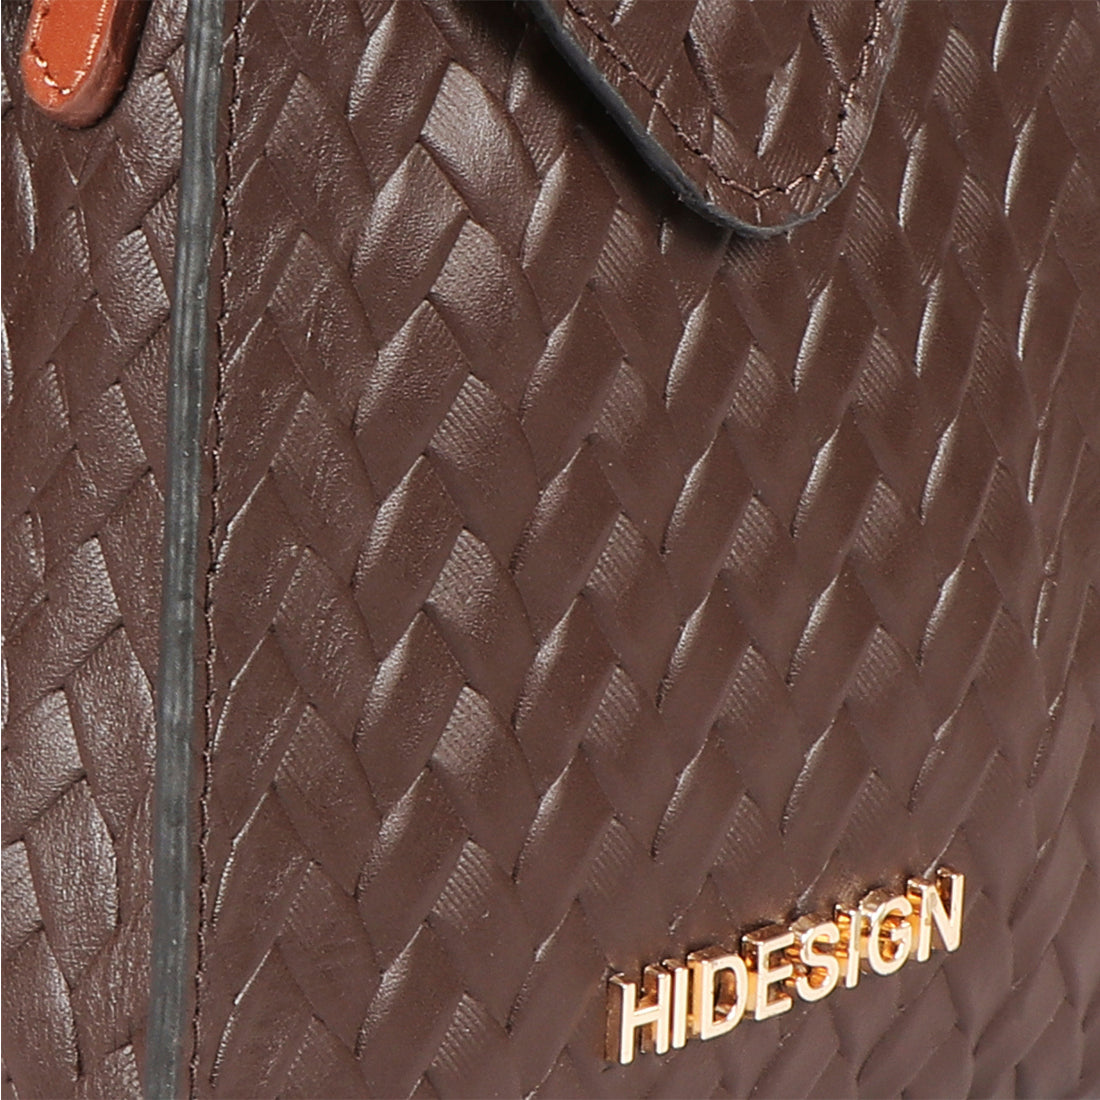 HIDESIGN Brown Sling Bag Fleet Street 01 Brown - Price in India